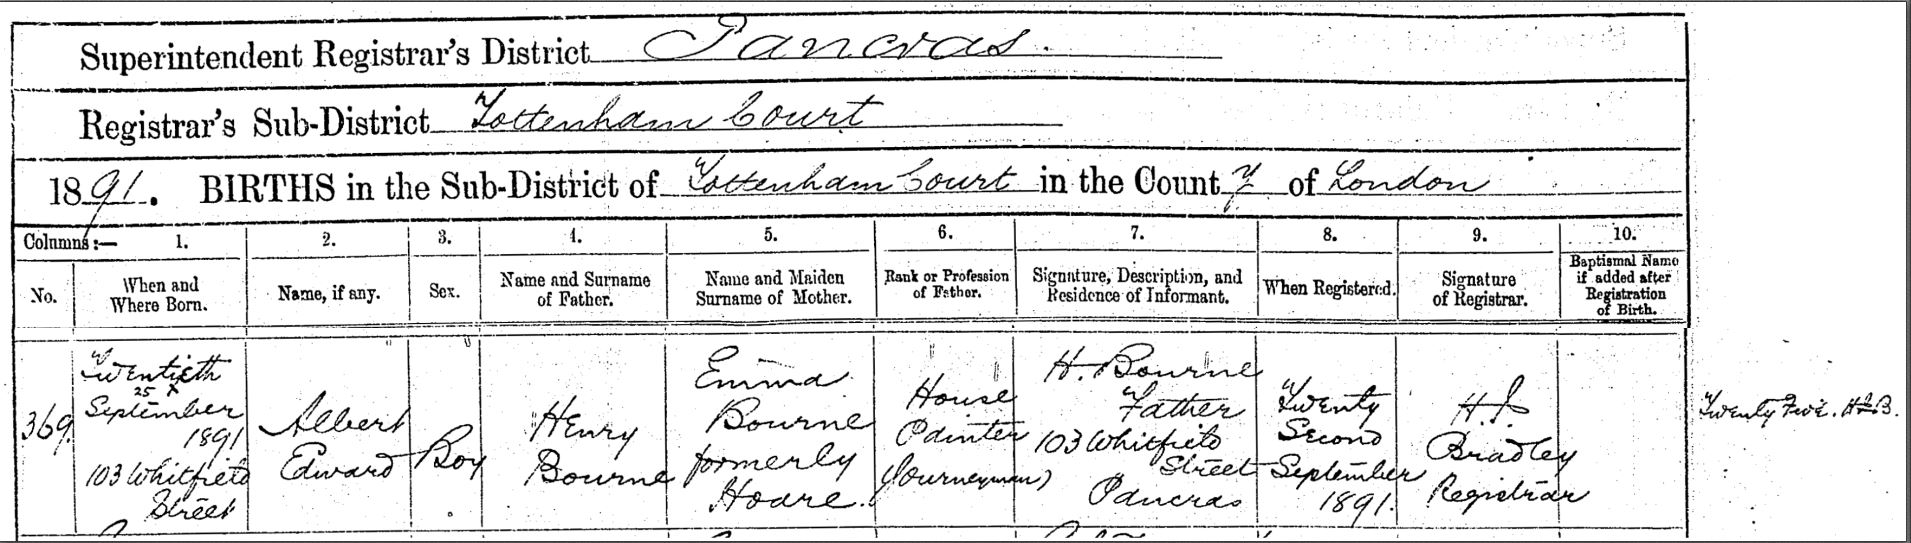 1891 Birth & Death Edward Albert Bourne.jpg